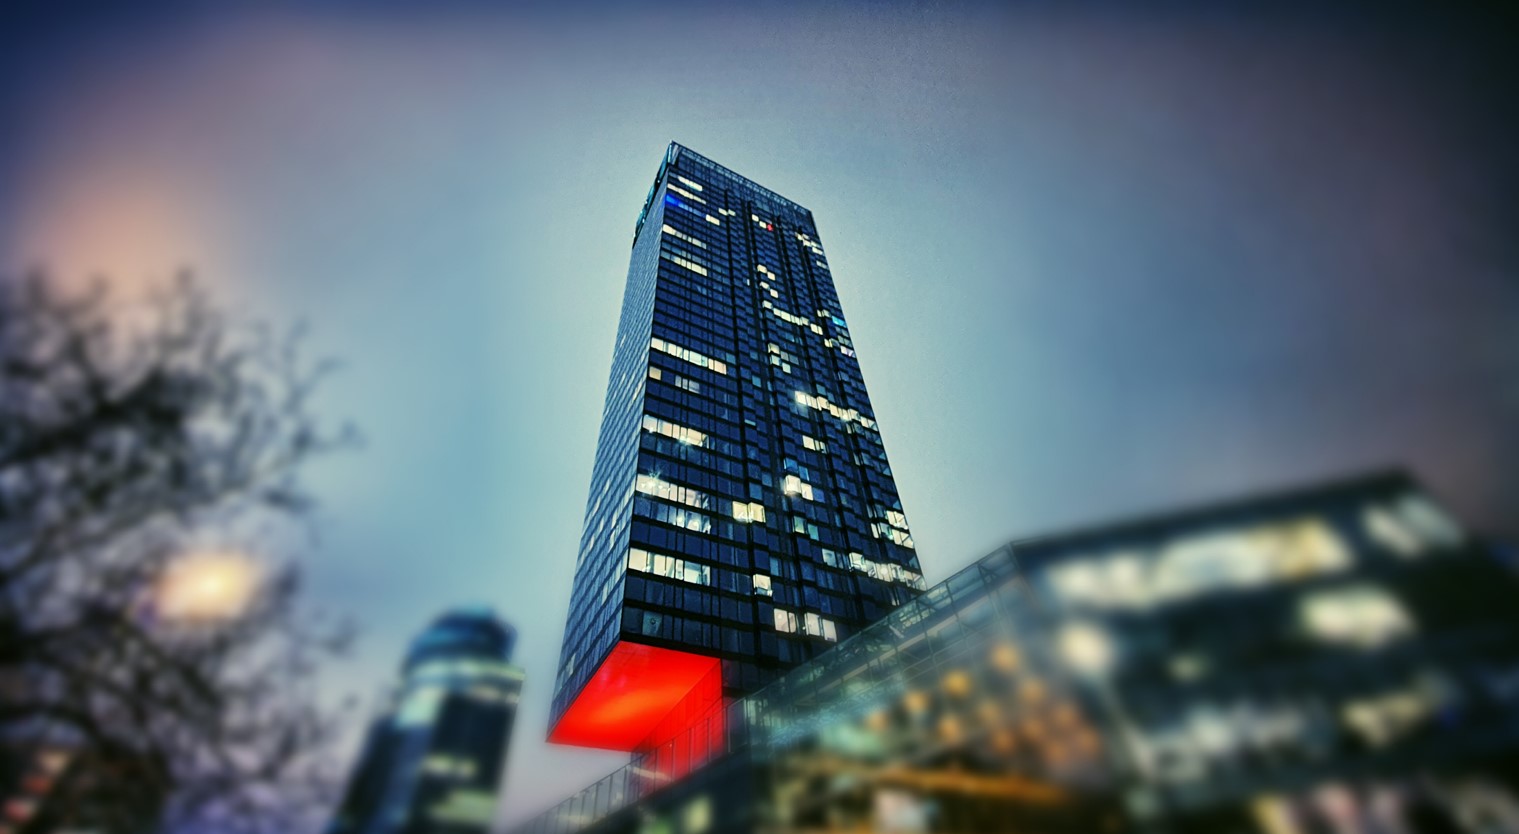 Cosmopolitan building in Warsaw